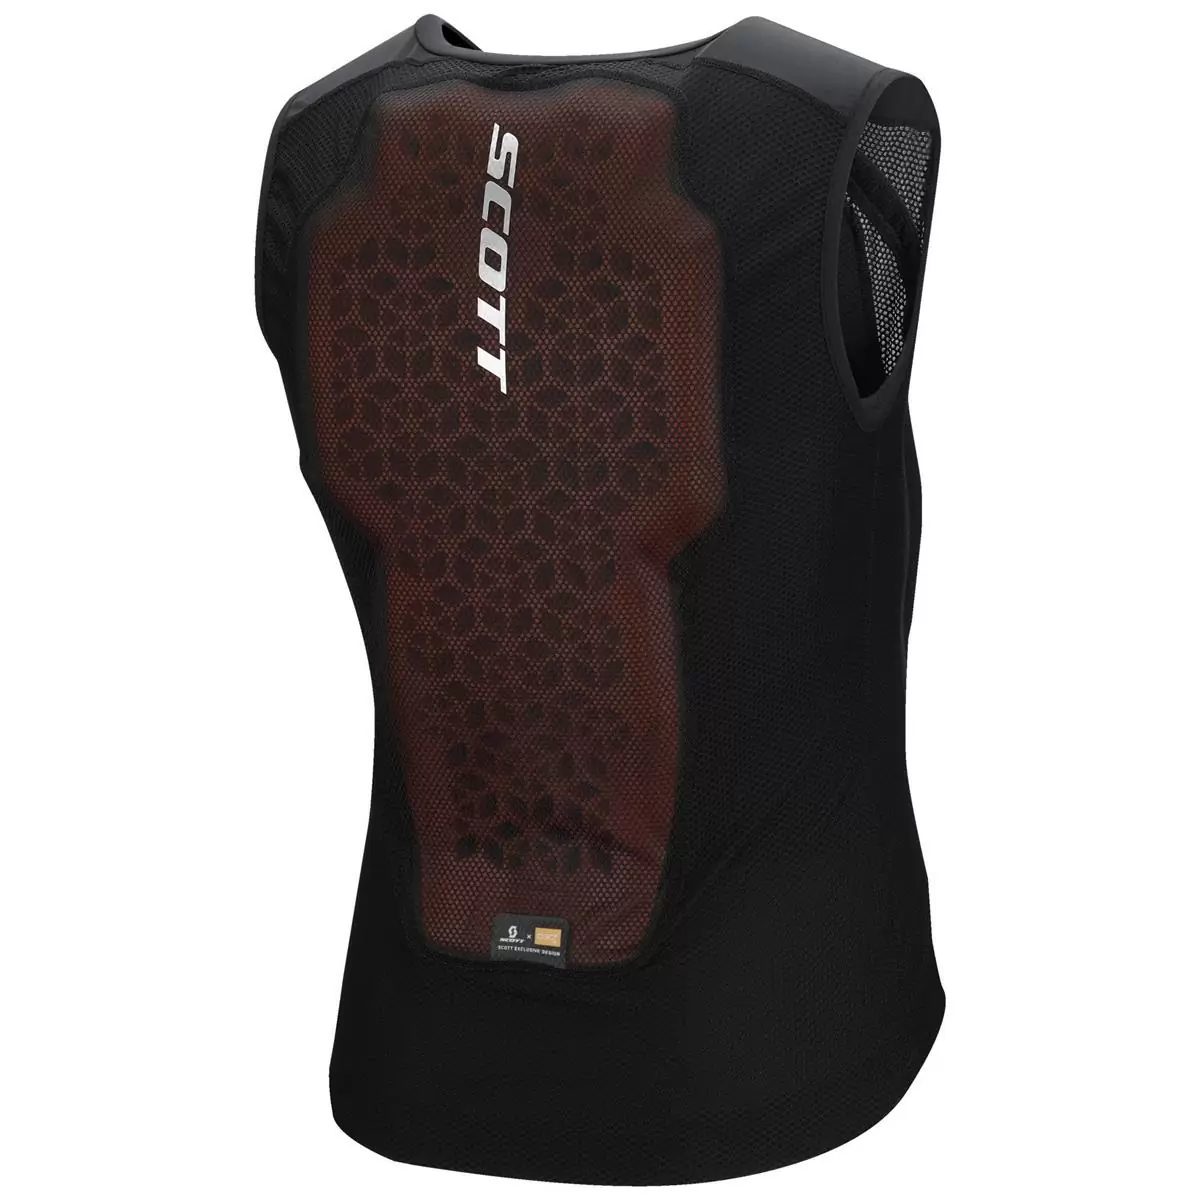 Vest Protector Softcon Hybrid Pro Protective Vest Black Size M #1